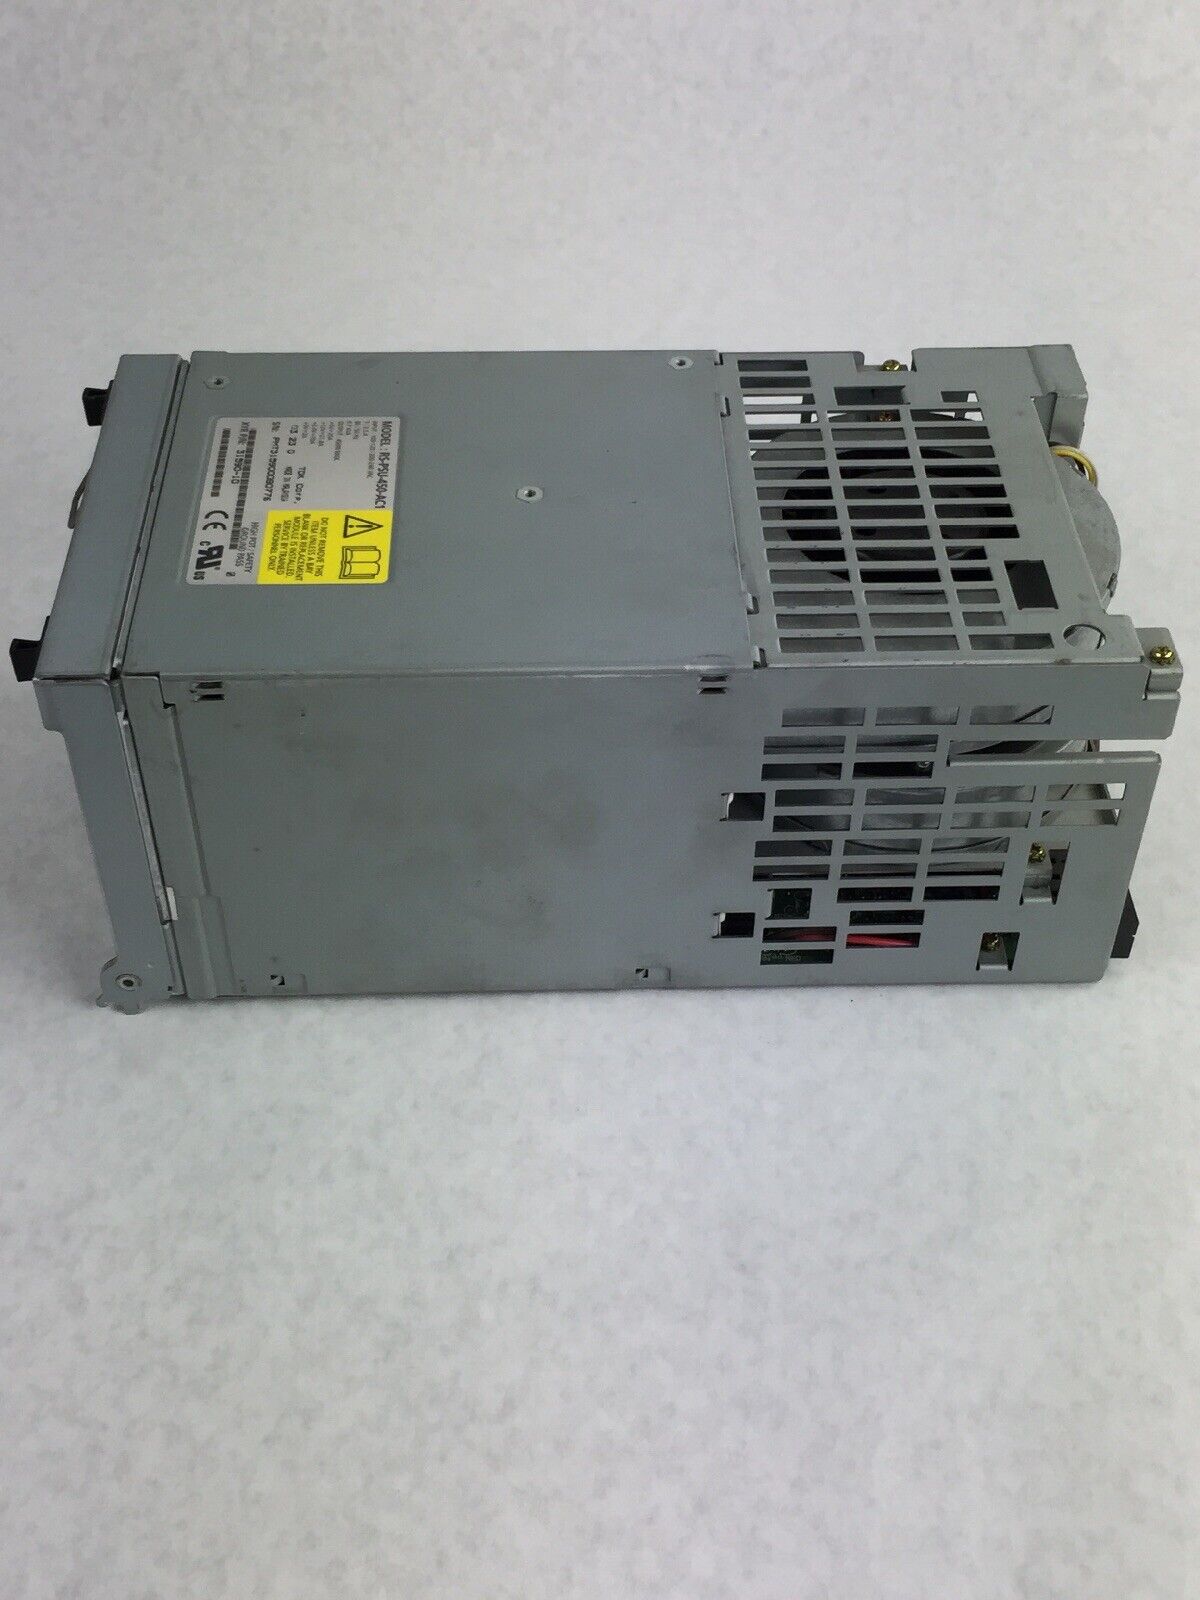 Genuine NetApp Power Supply RS-PSU-450-AC1 450W TDK